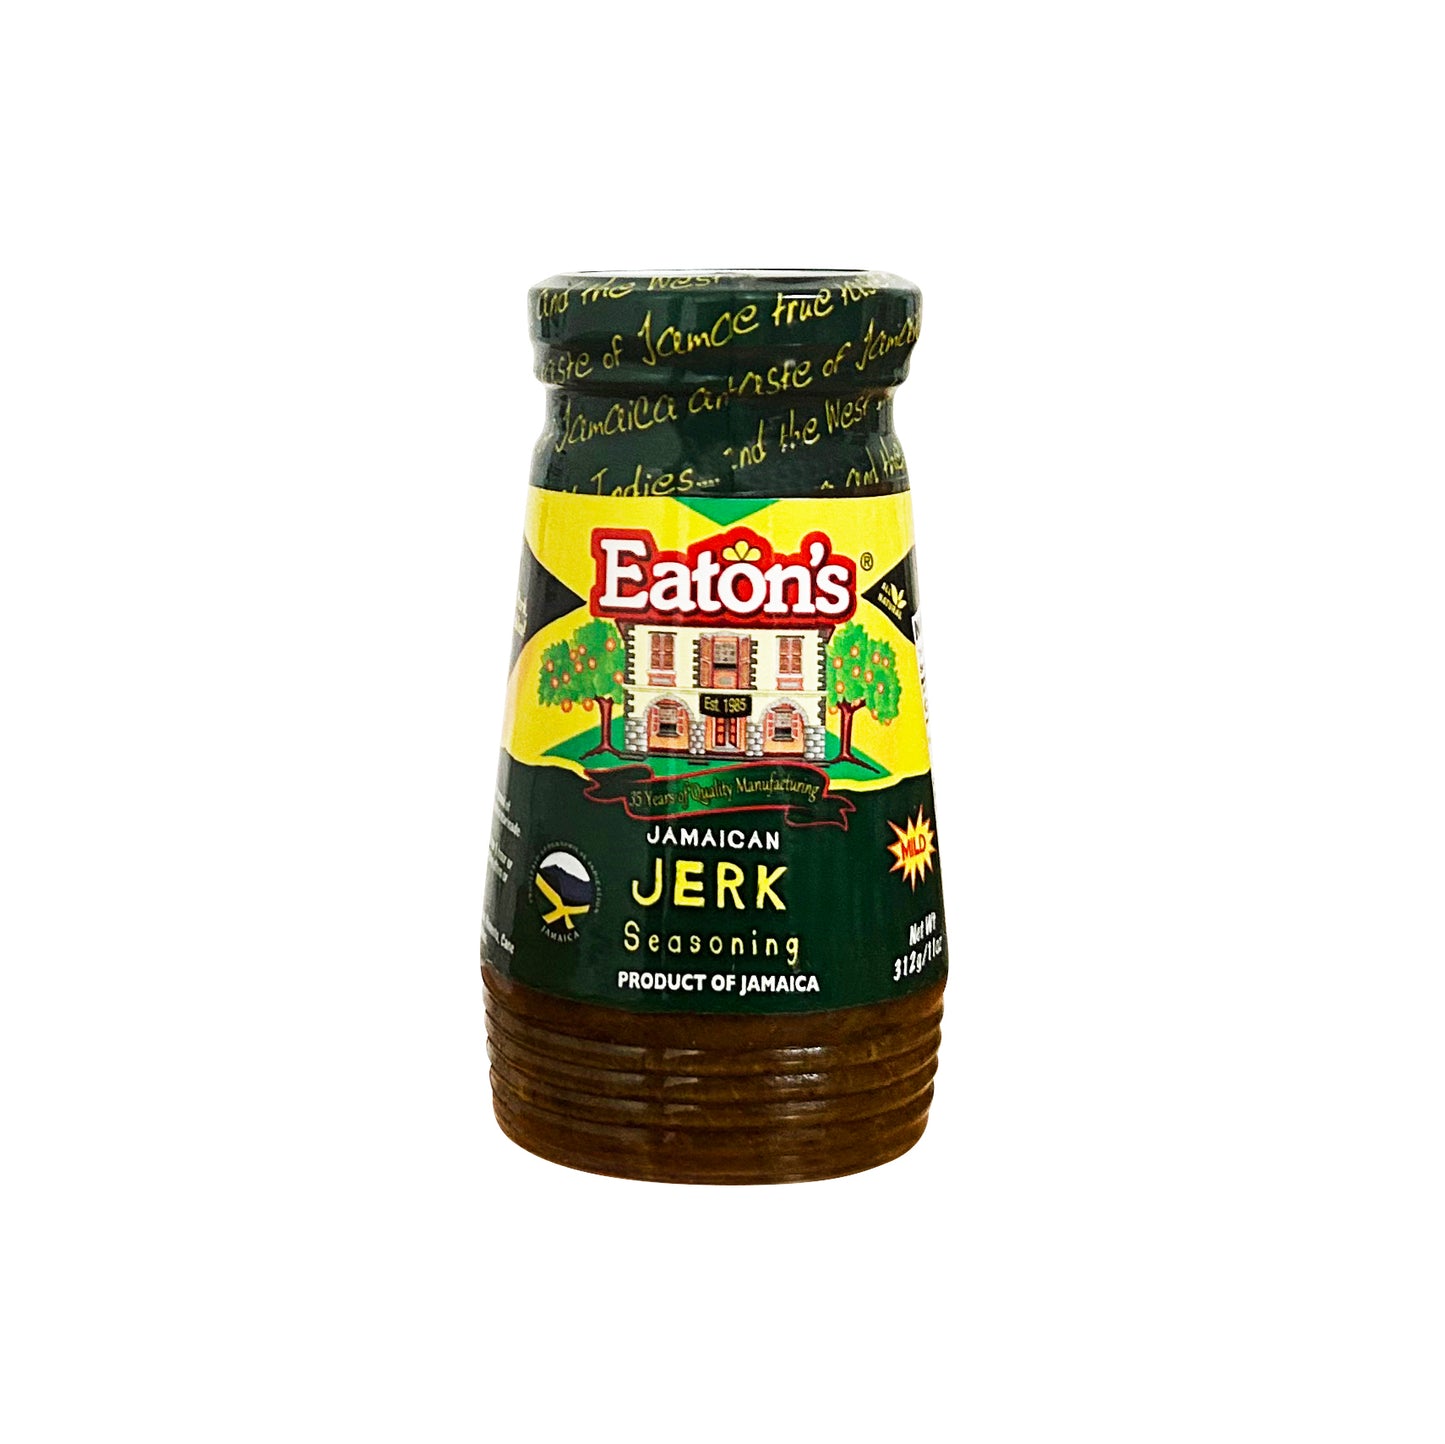 Eaton's Jamaican Jerk Seasoning - Mild